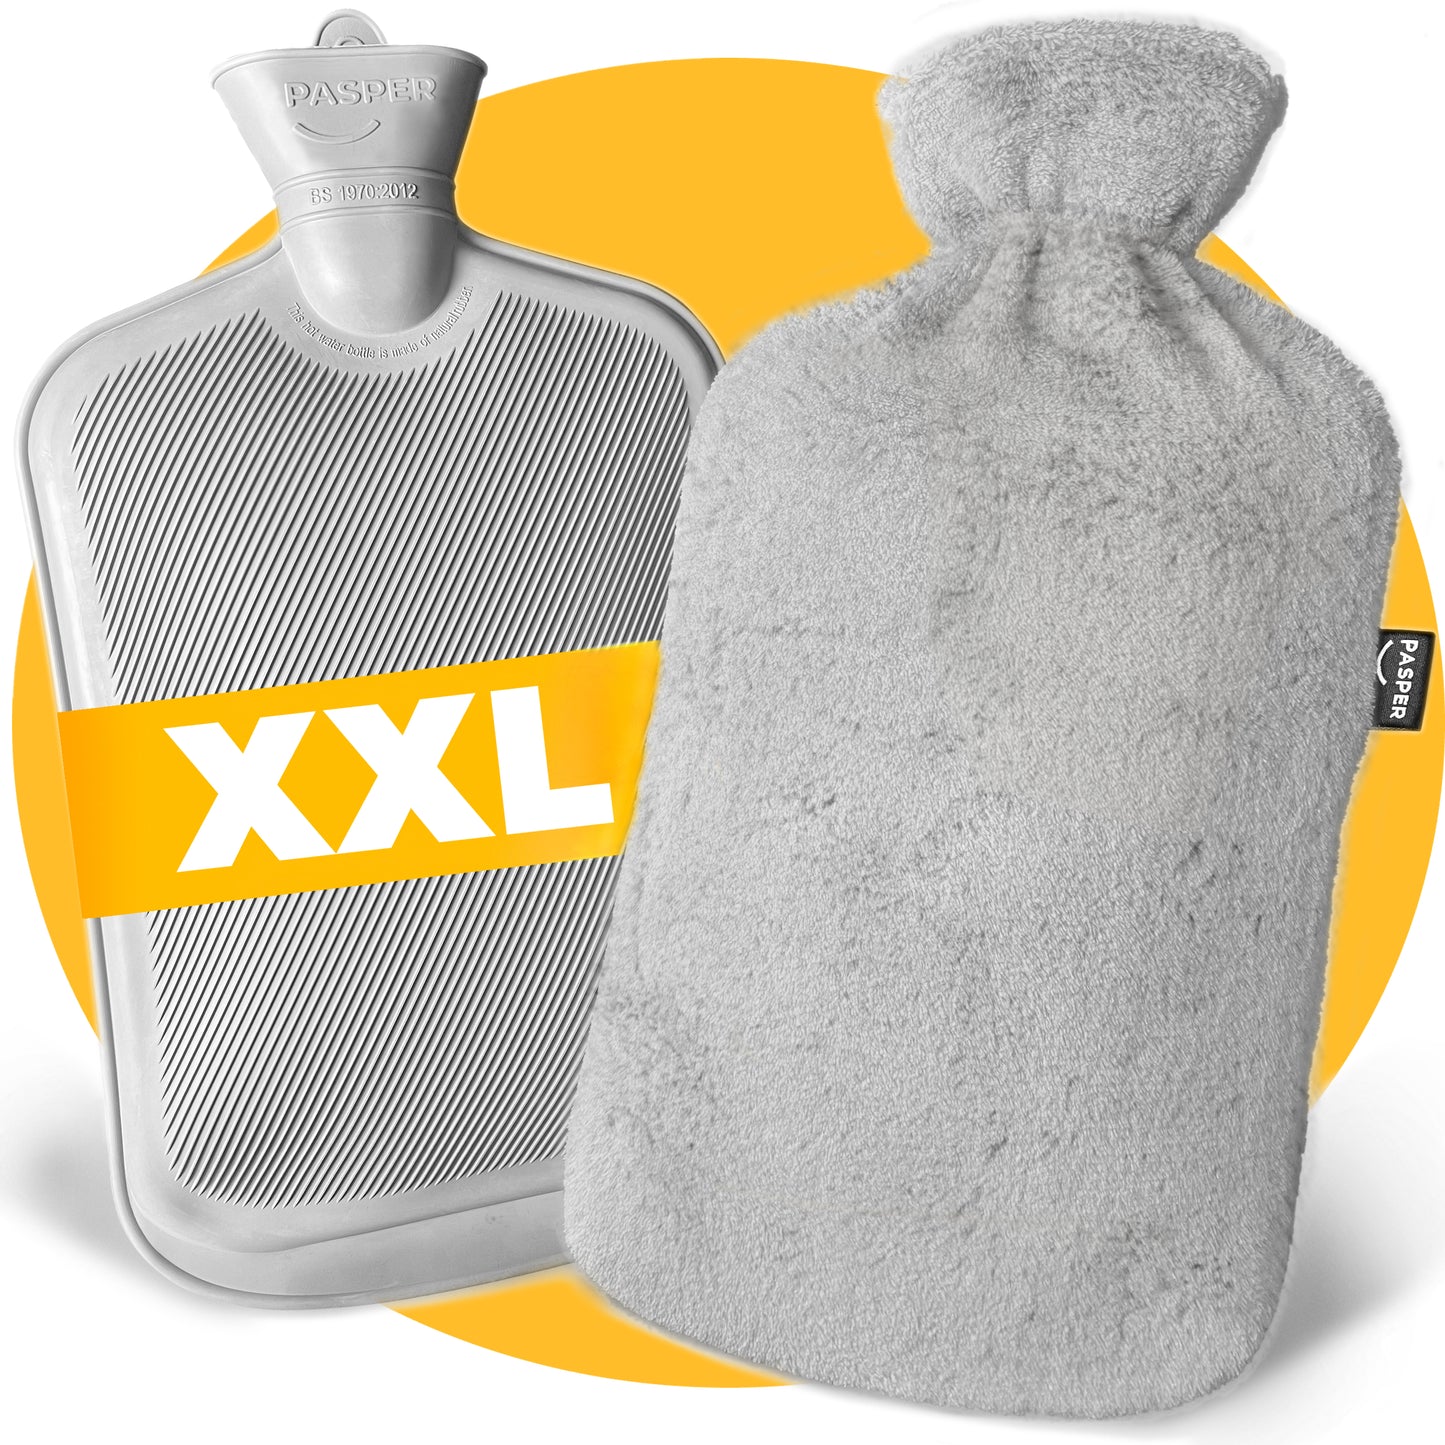 Pasper XL Hot water bottle